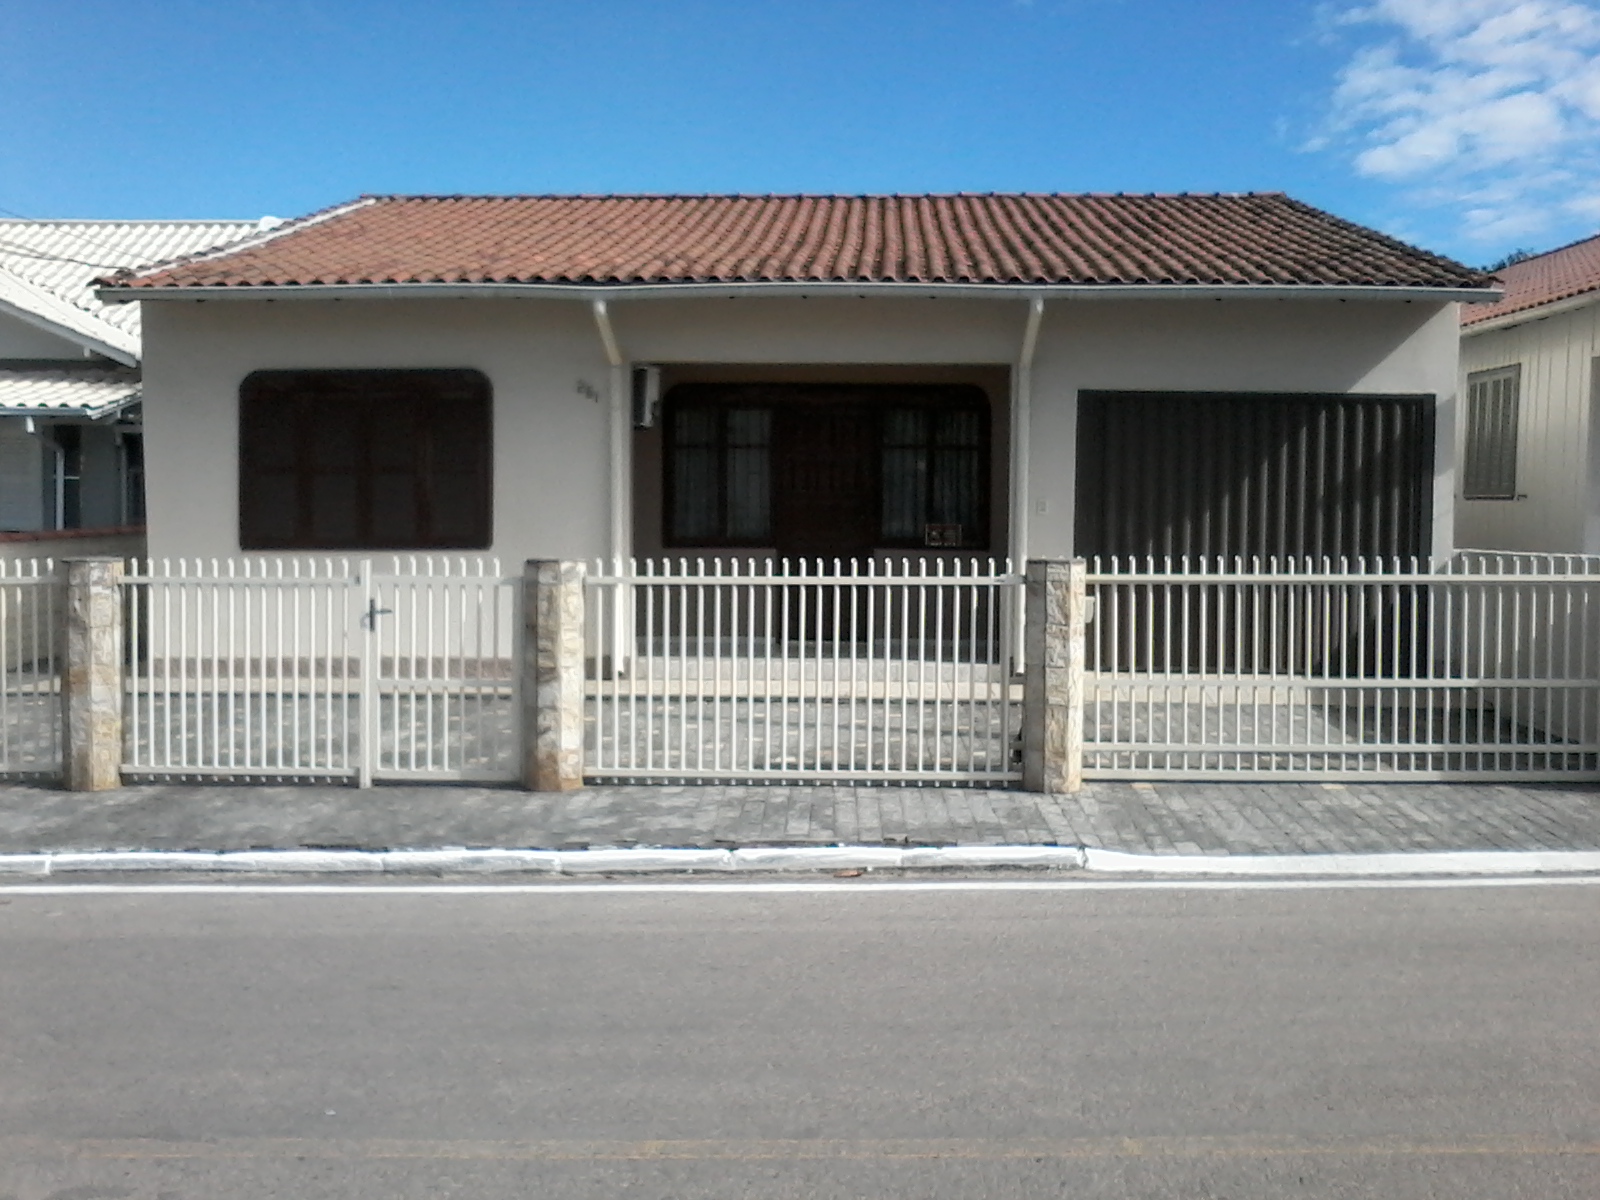 Venda Casa TUBARÃO - SC